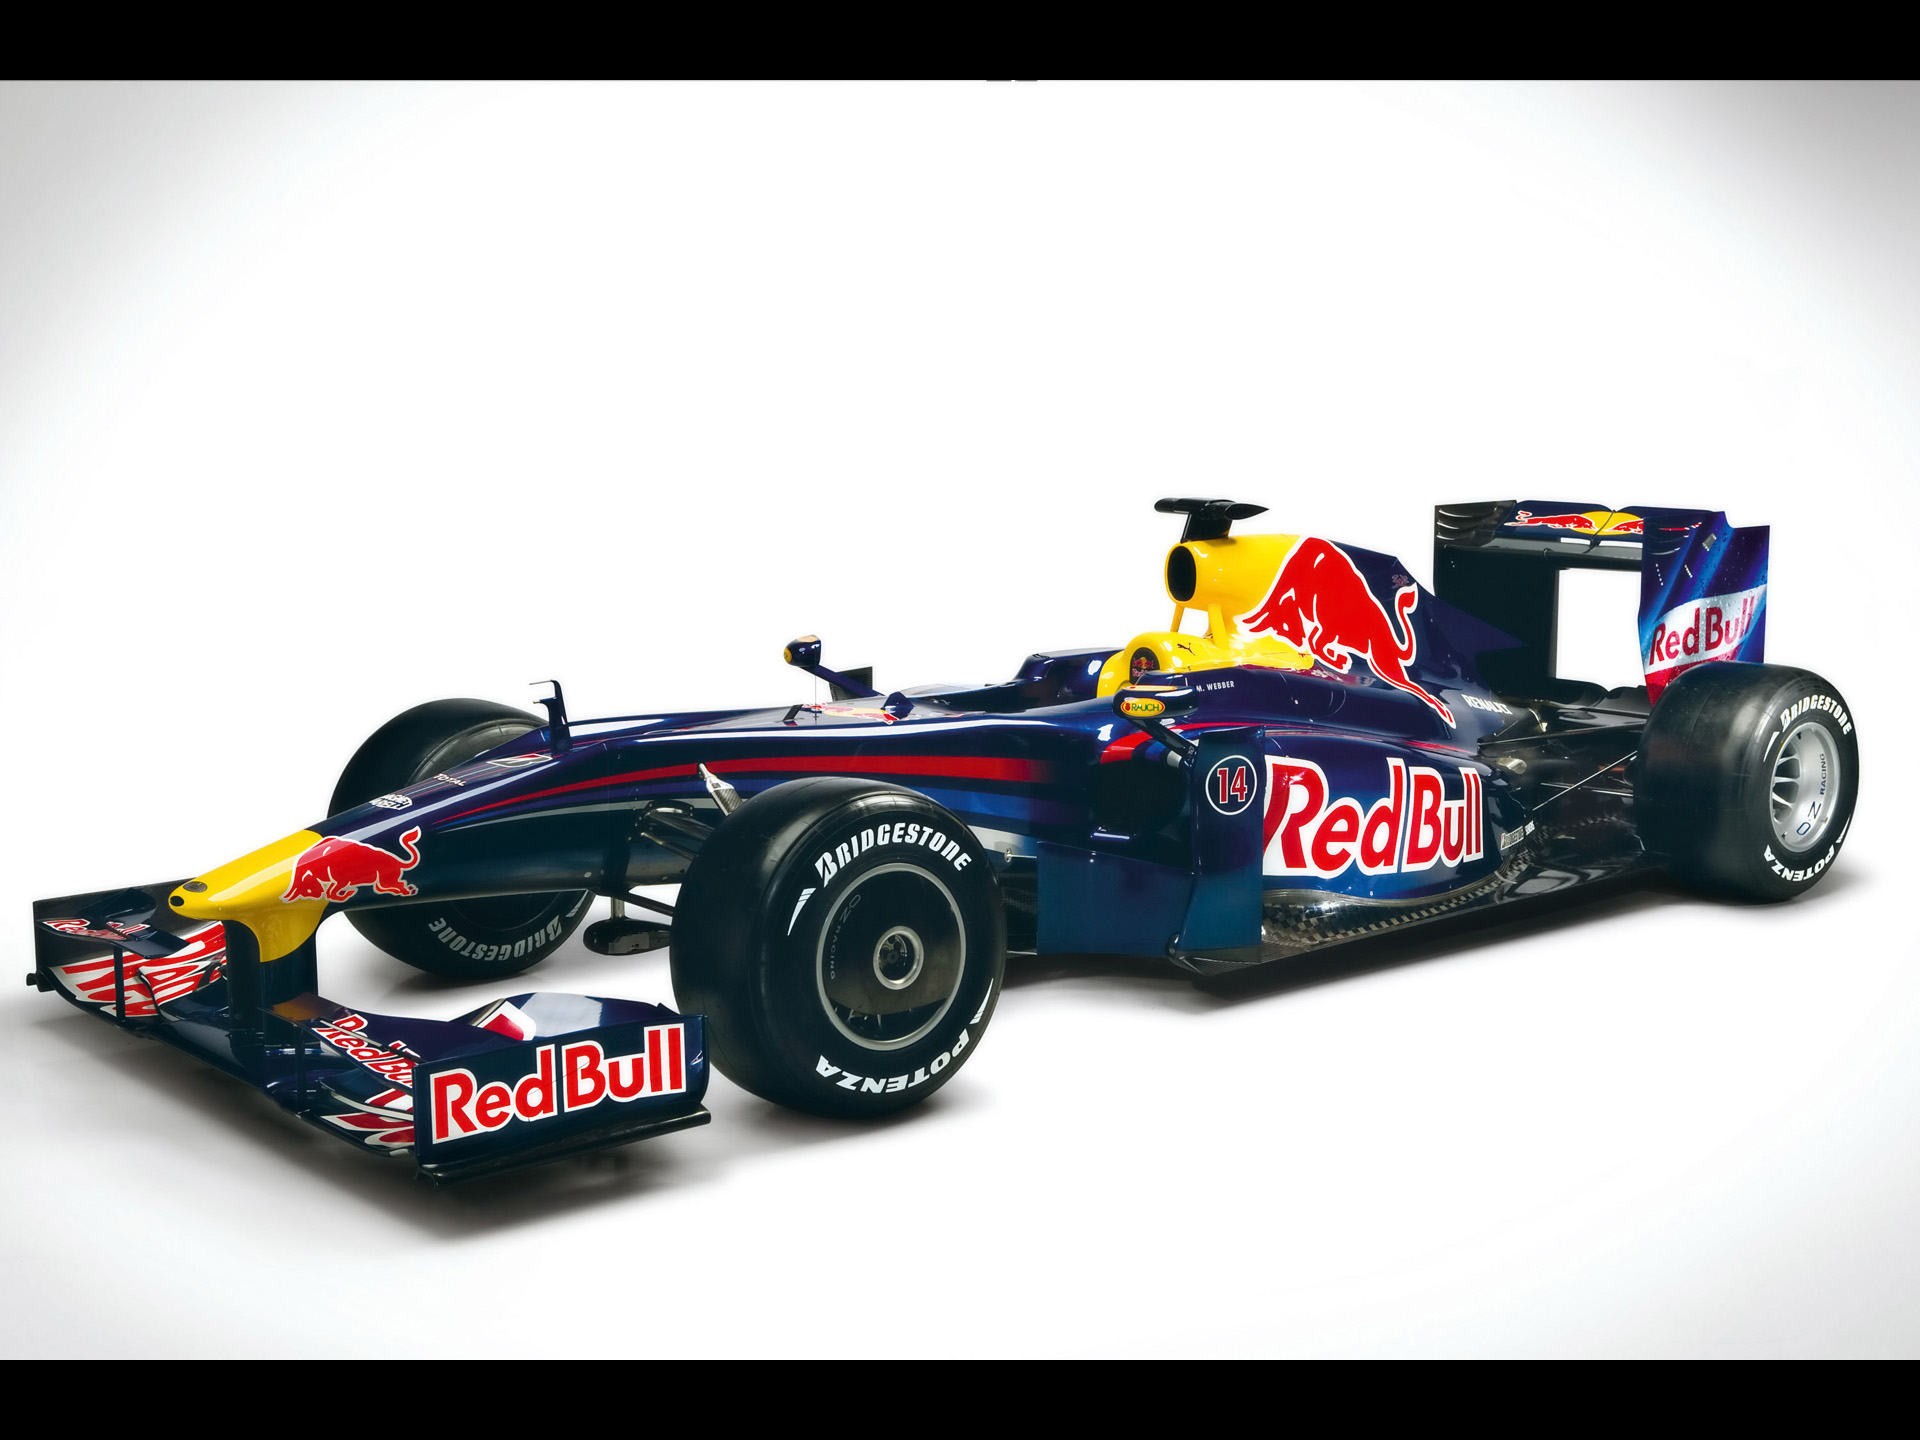 2009 Red Bull RB5 F1 - Avant Et Côté - 1920x1440 - Papier Peint